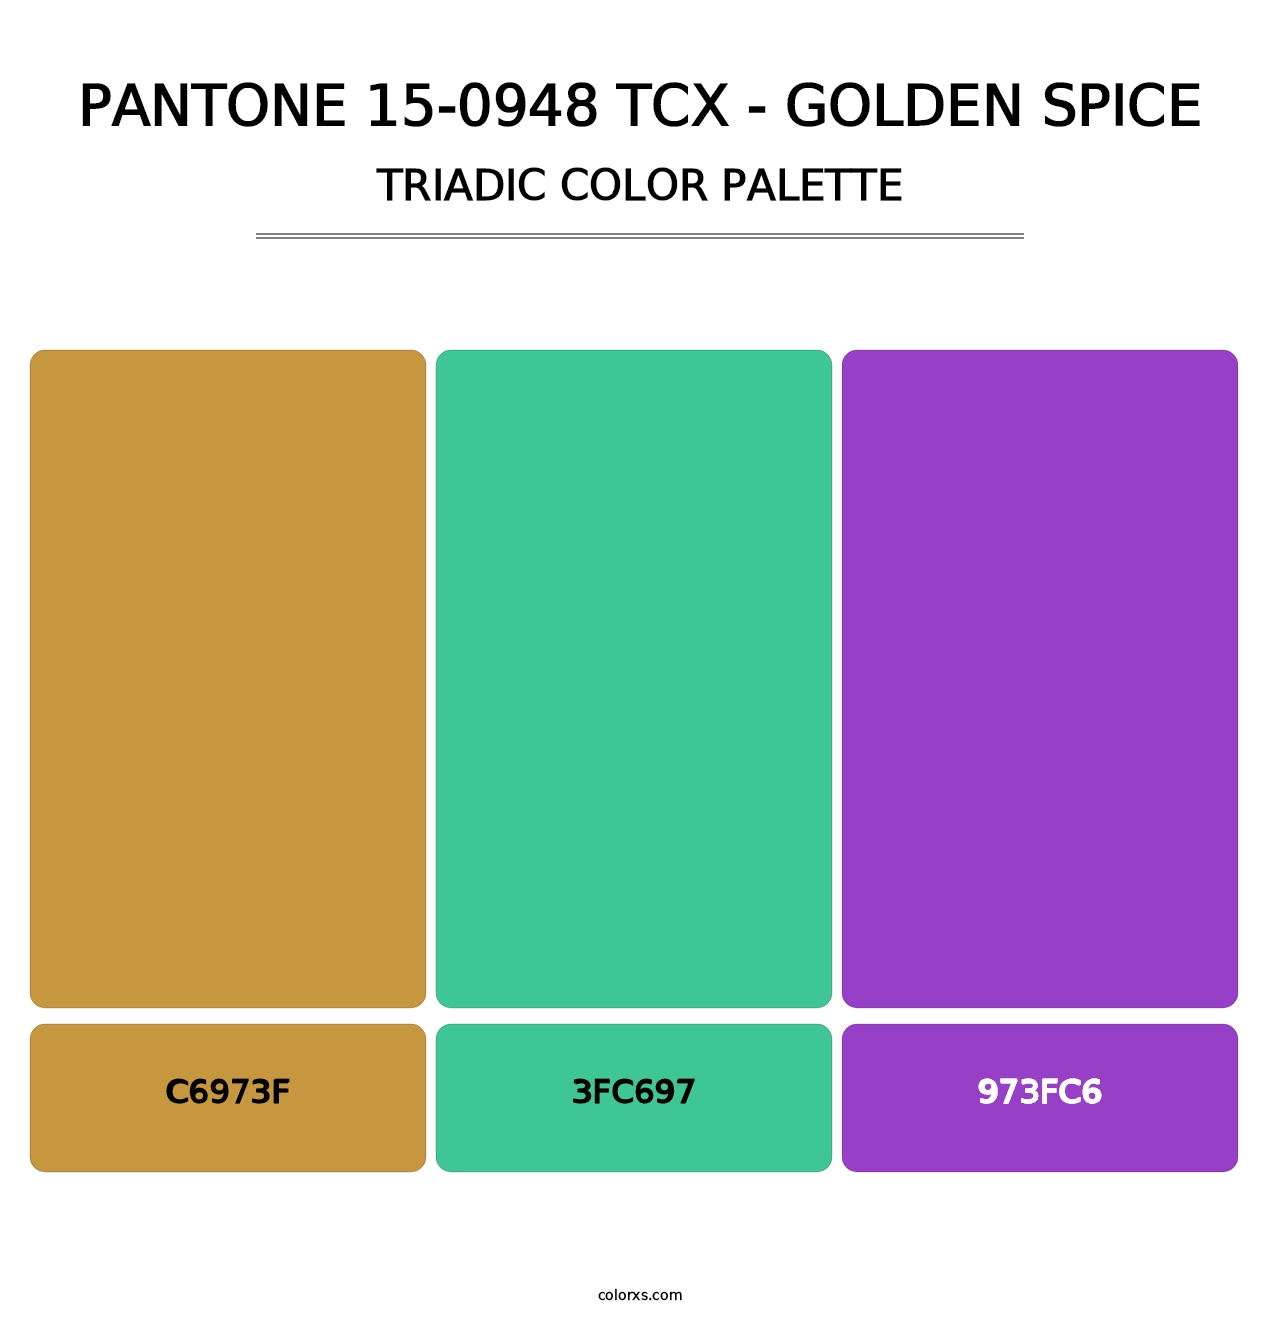 PANTONE 15-0948 TCX - Golden Spice - Triadic Color Palette